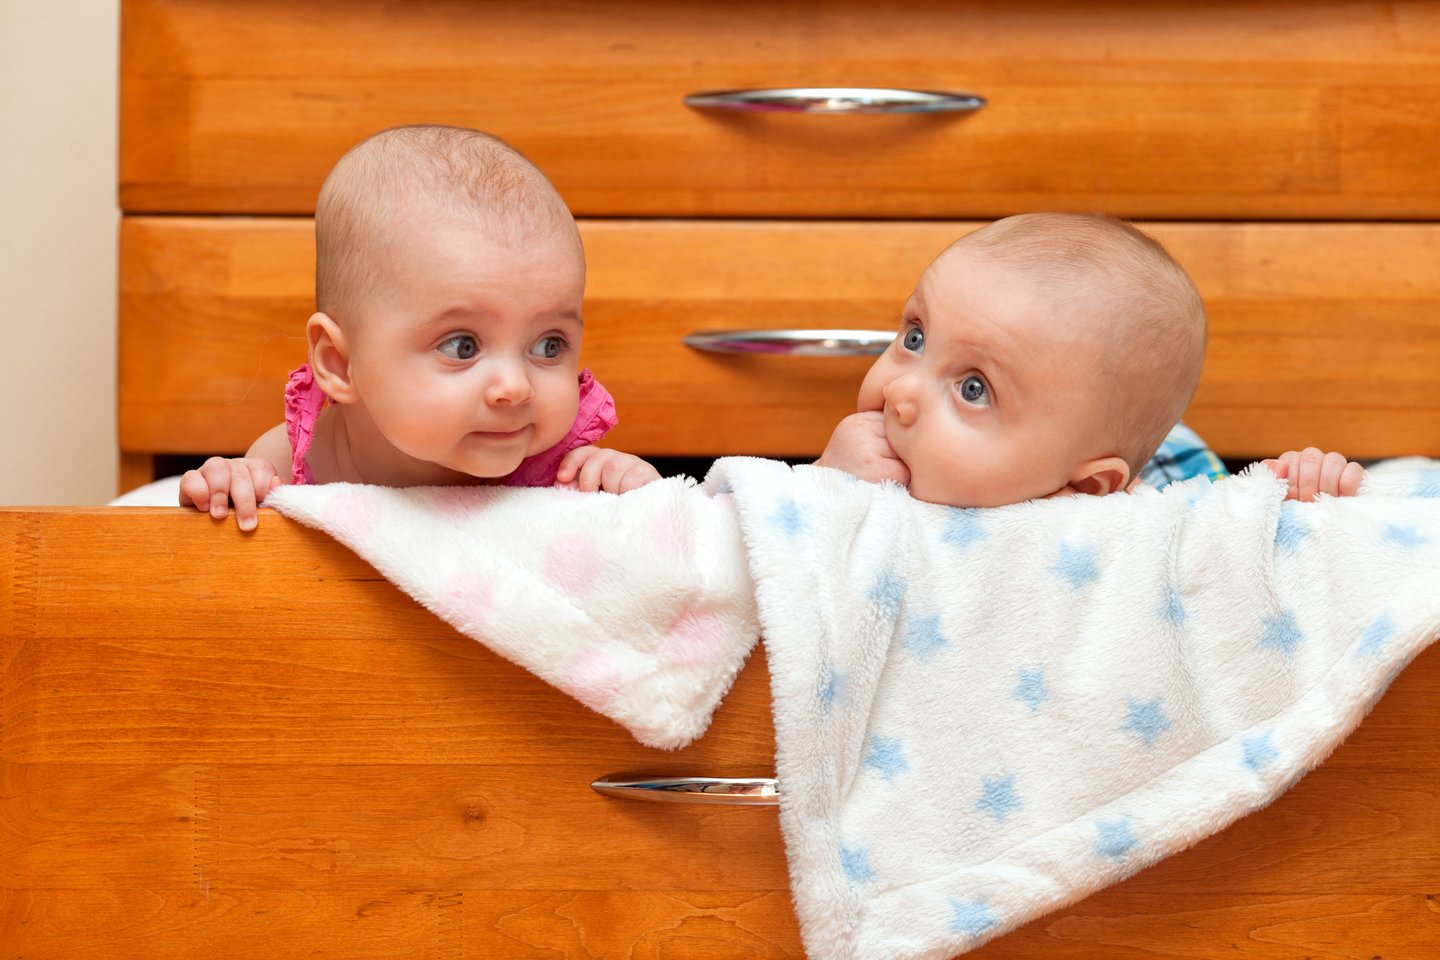  Vidutiniškai, pasaulyje dabar iš 1000 gimdymų 12 kartų gimsta dvynukai. Šis rodiklis yra didžiausias per ištisus dešimtmečius, o galimai – ir per visą istoriją.<br> 123rf nuotr.